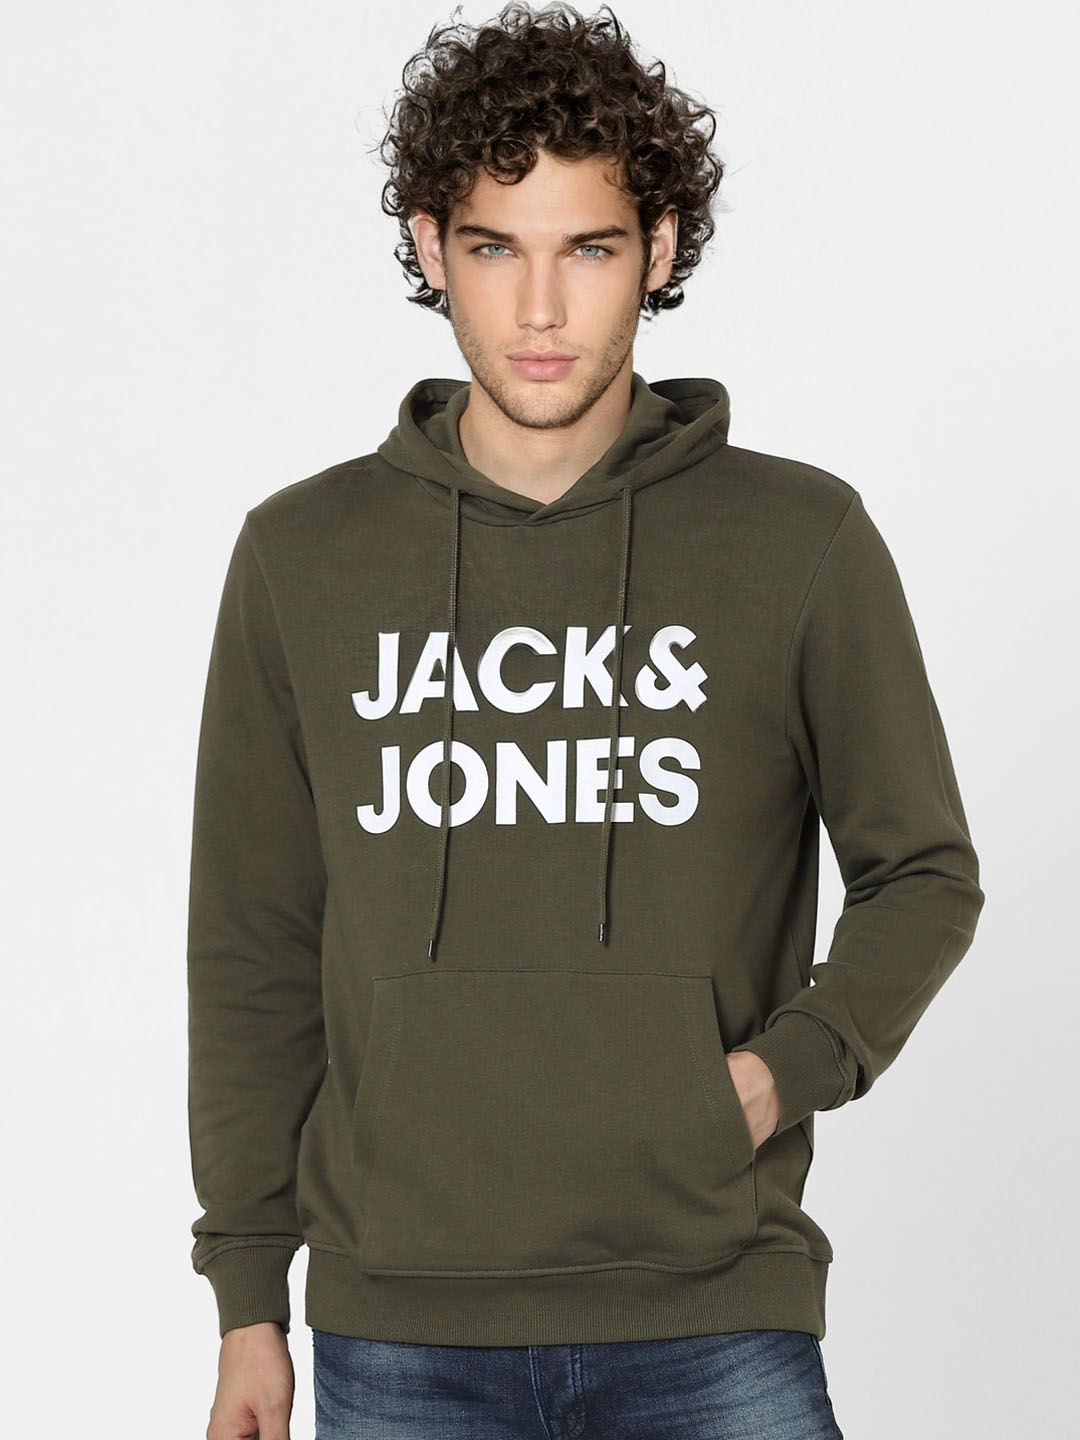 Åre energi Anzai Buy Jack & Jones Jack & Jones Men Olive Green Typography Printed Hooded  Sweatshirt at Redfynd